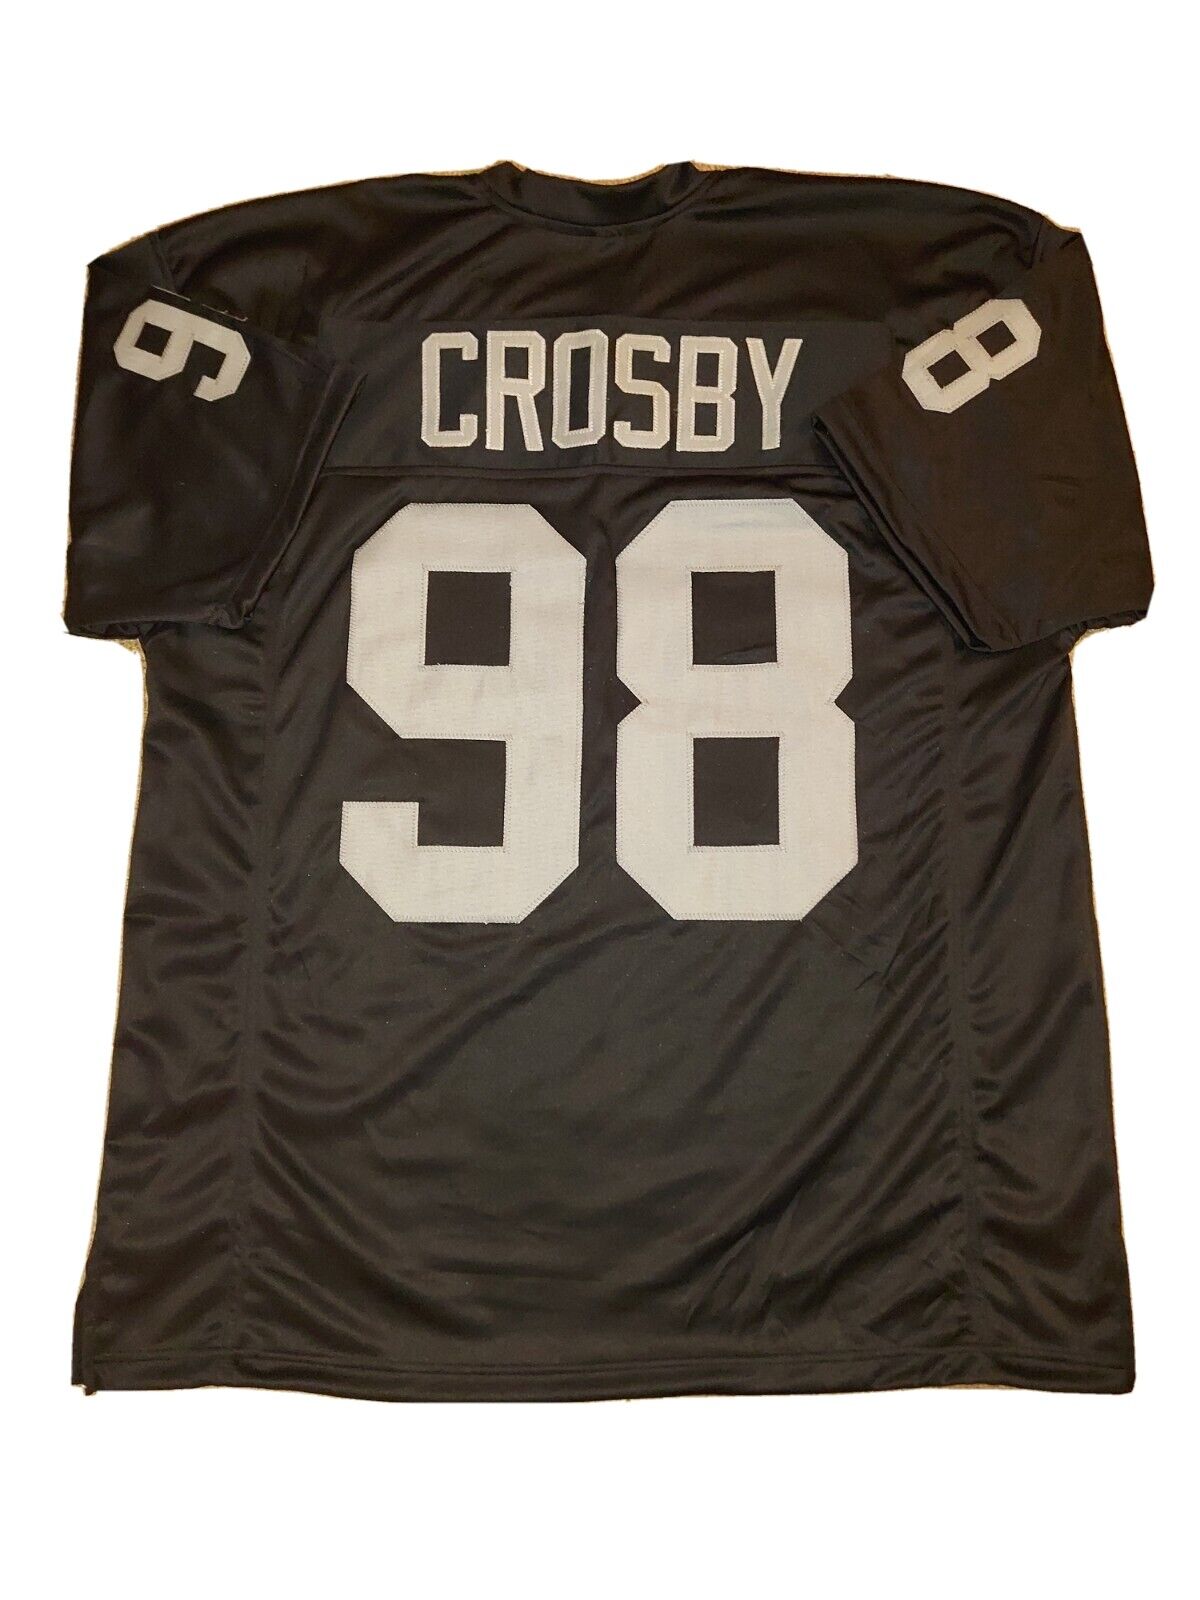 New Maxx Crosby 3XL Las Vegas Raiders Pro Custom Stitch Football Jersey Mens